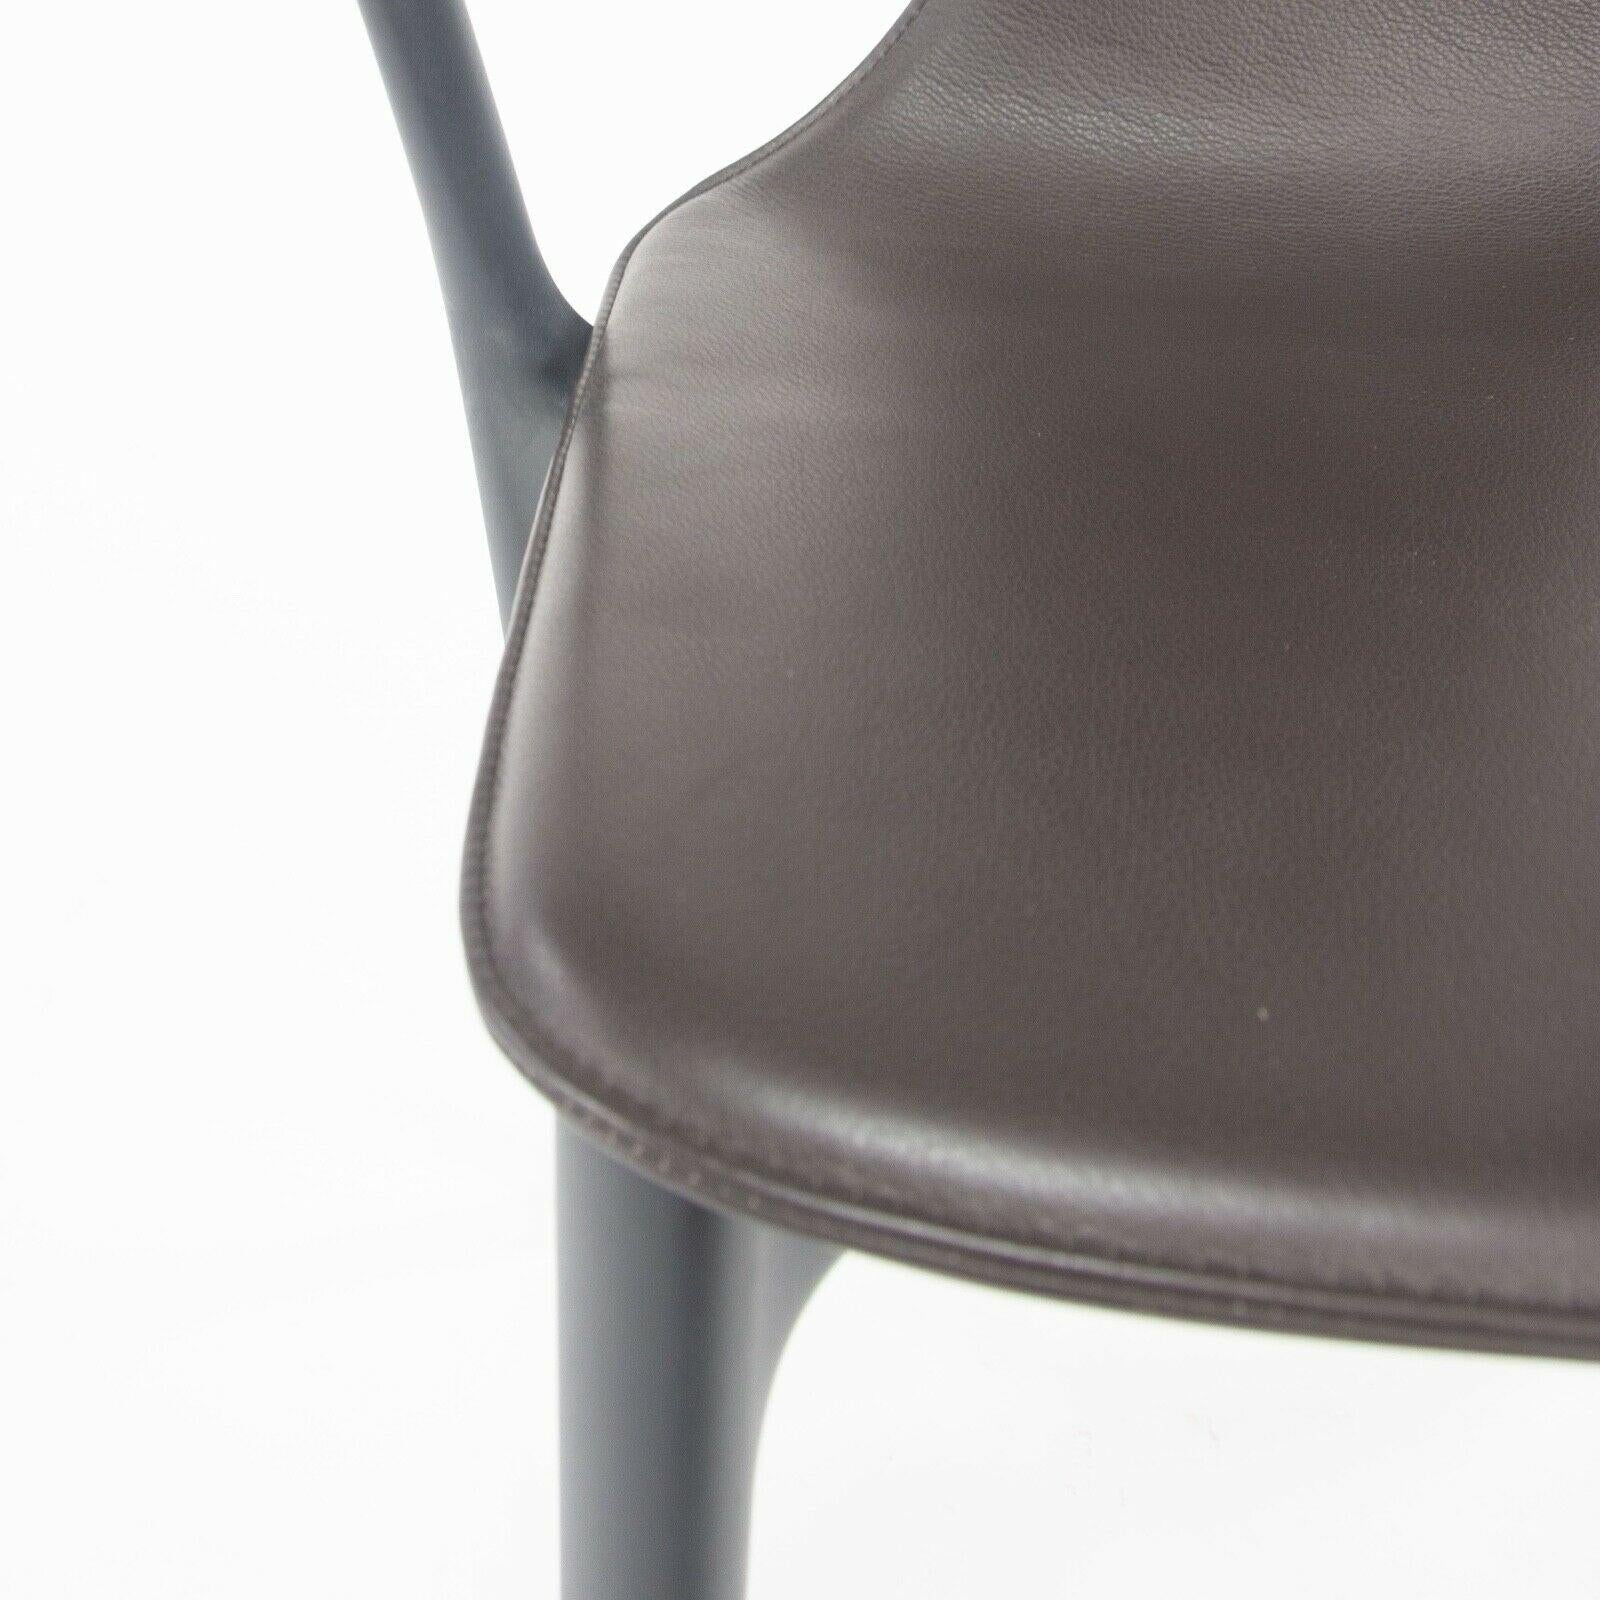 Le fauteuil Belleville, conçu par Ronan et Erwan Bouroullec et produit par Vitra, est proposé à la vente. Cette chaise a été spécifiée avec un cadre en plastique noir et une coque d'assise recouverte de cuir marron. L'état est décrit comme 